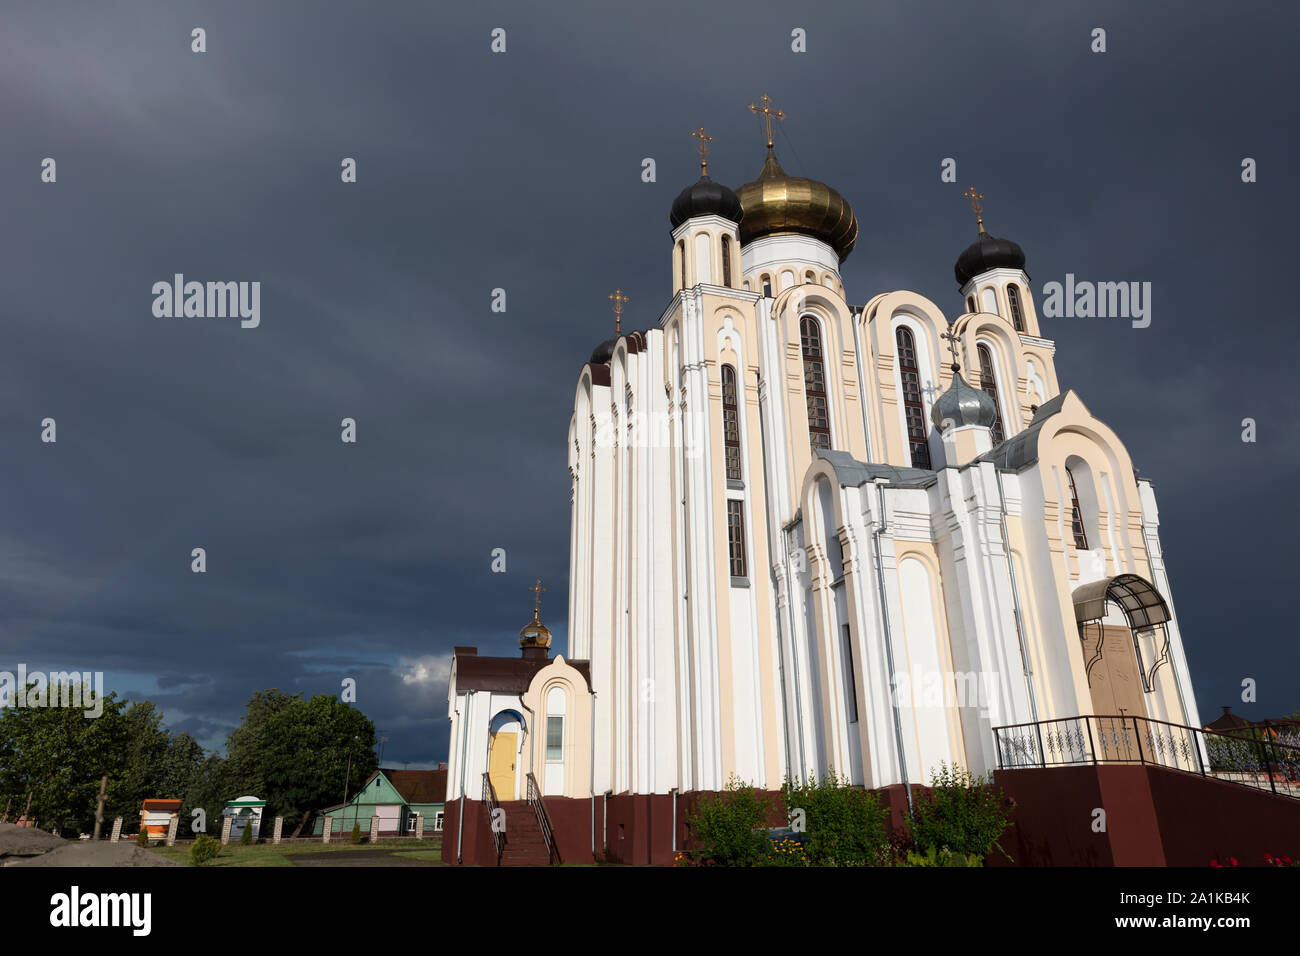 All Saints Church dans Lida. Lida, région de Grodno, Bélarus. Banque D'Images